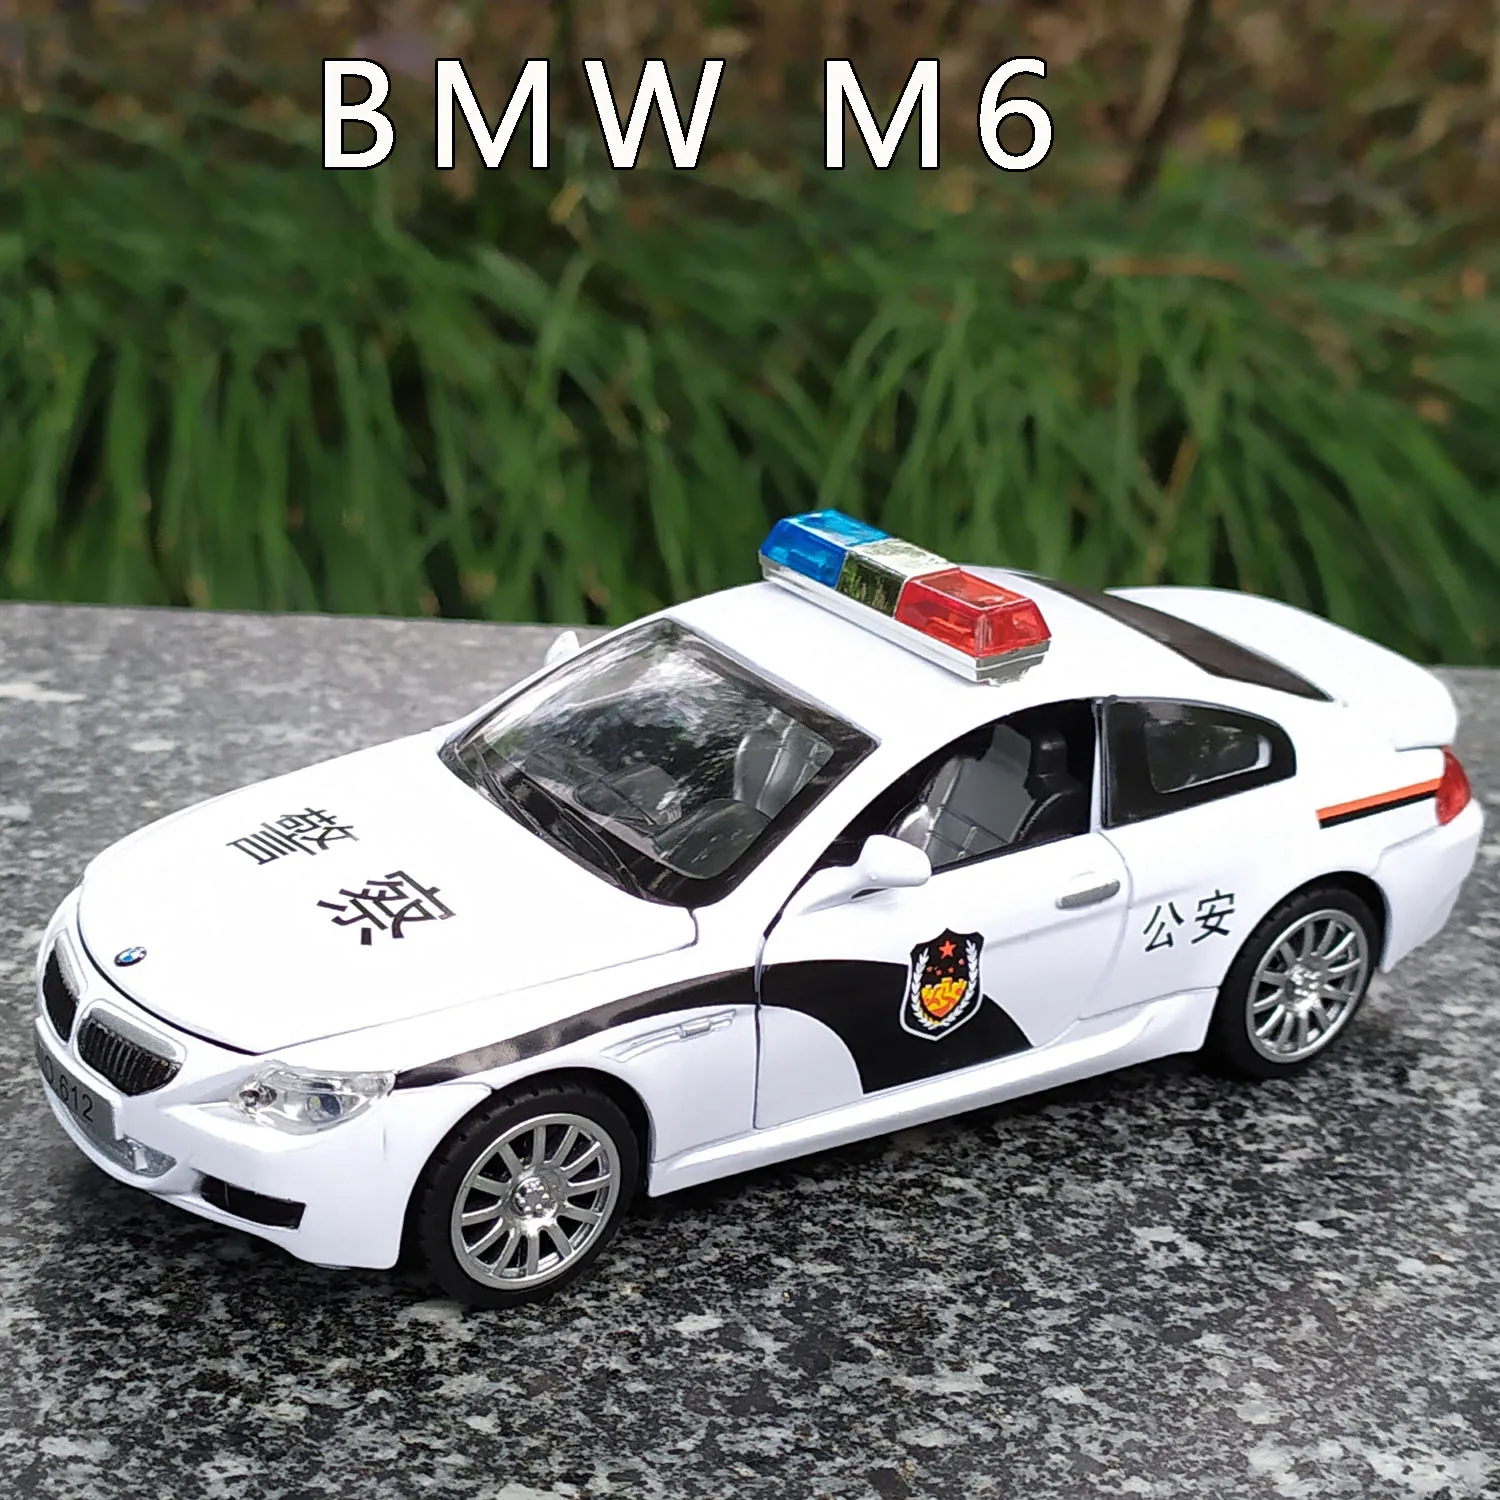 1:32 Bmw M6 Politsei Auto Mudel Heli Ja Valguse Tõmba Tagasi Sulamist Auto Mänguasi Hoiatus Tuli Politsei Simulatsiooni Laps Auto Mudel Kogumine